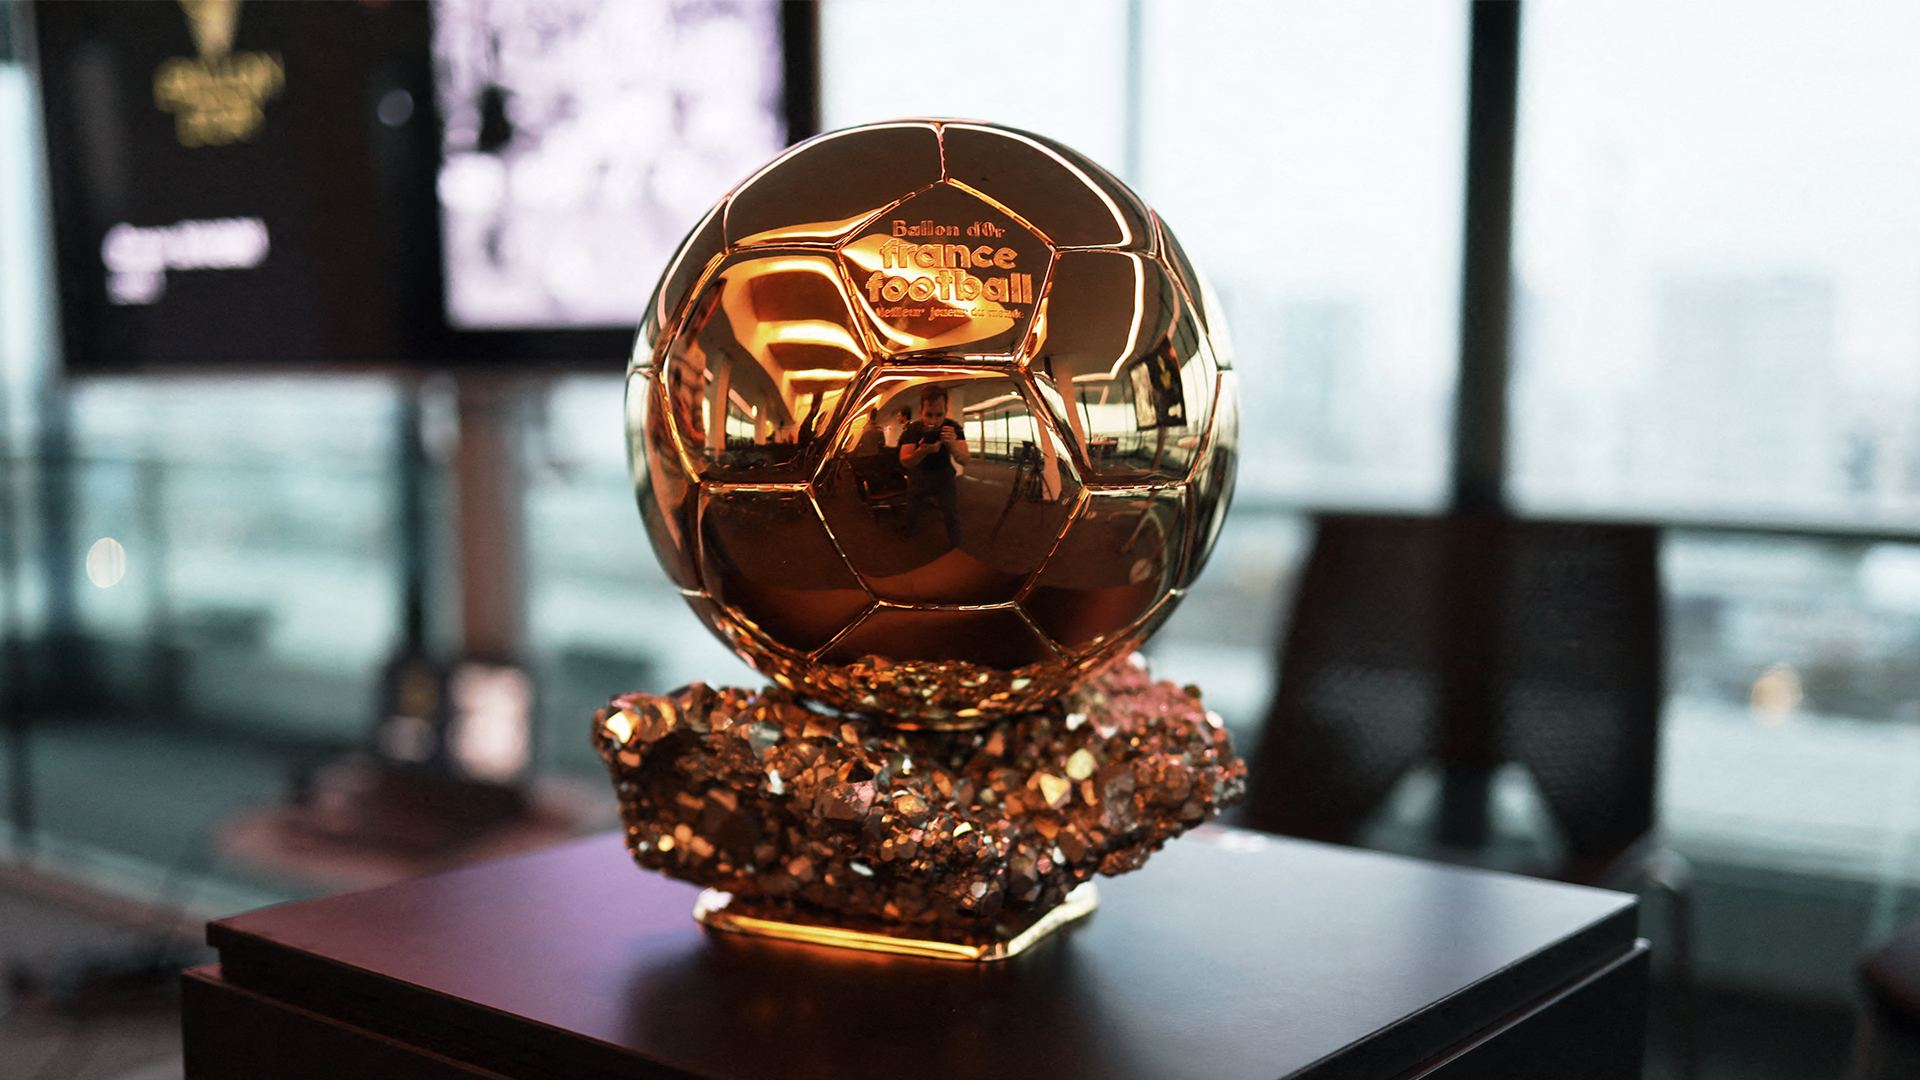 Ballon d'or 2022 : qui va remettre le prestigieux trophée ?